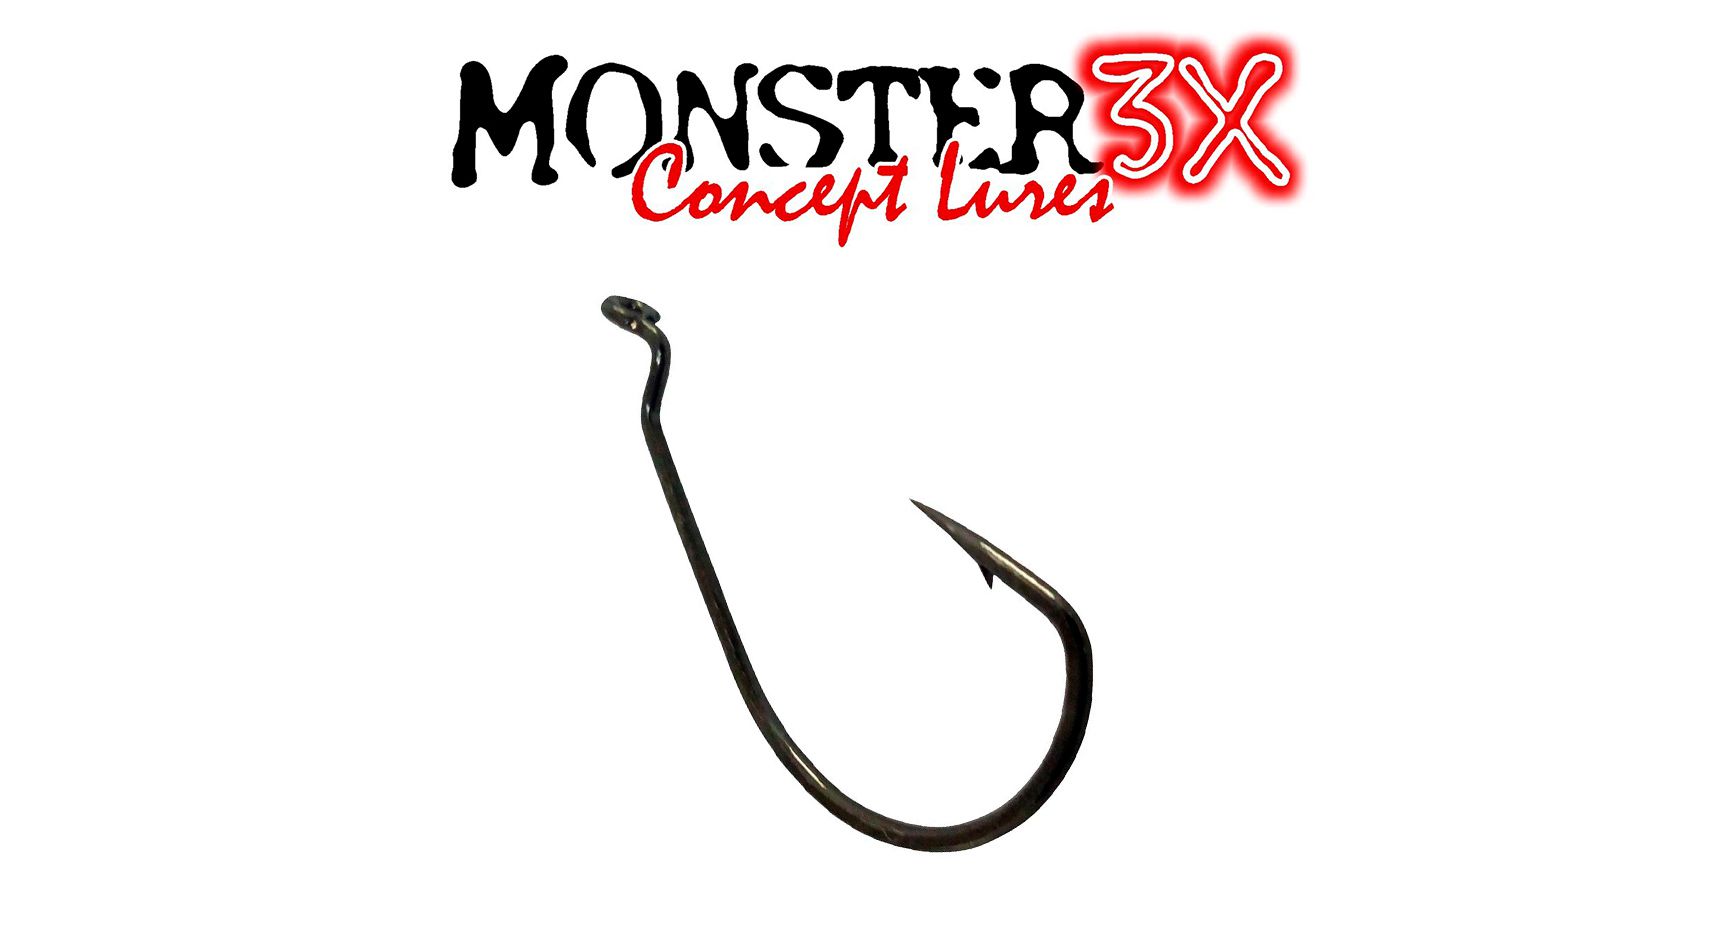 Anzol Off Set EWG 4/0 Monster 3X - 3 Peças - Life Pesca - Sua loja de Pesca, Camping e Lazer